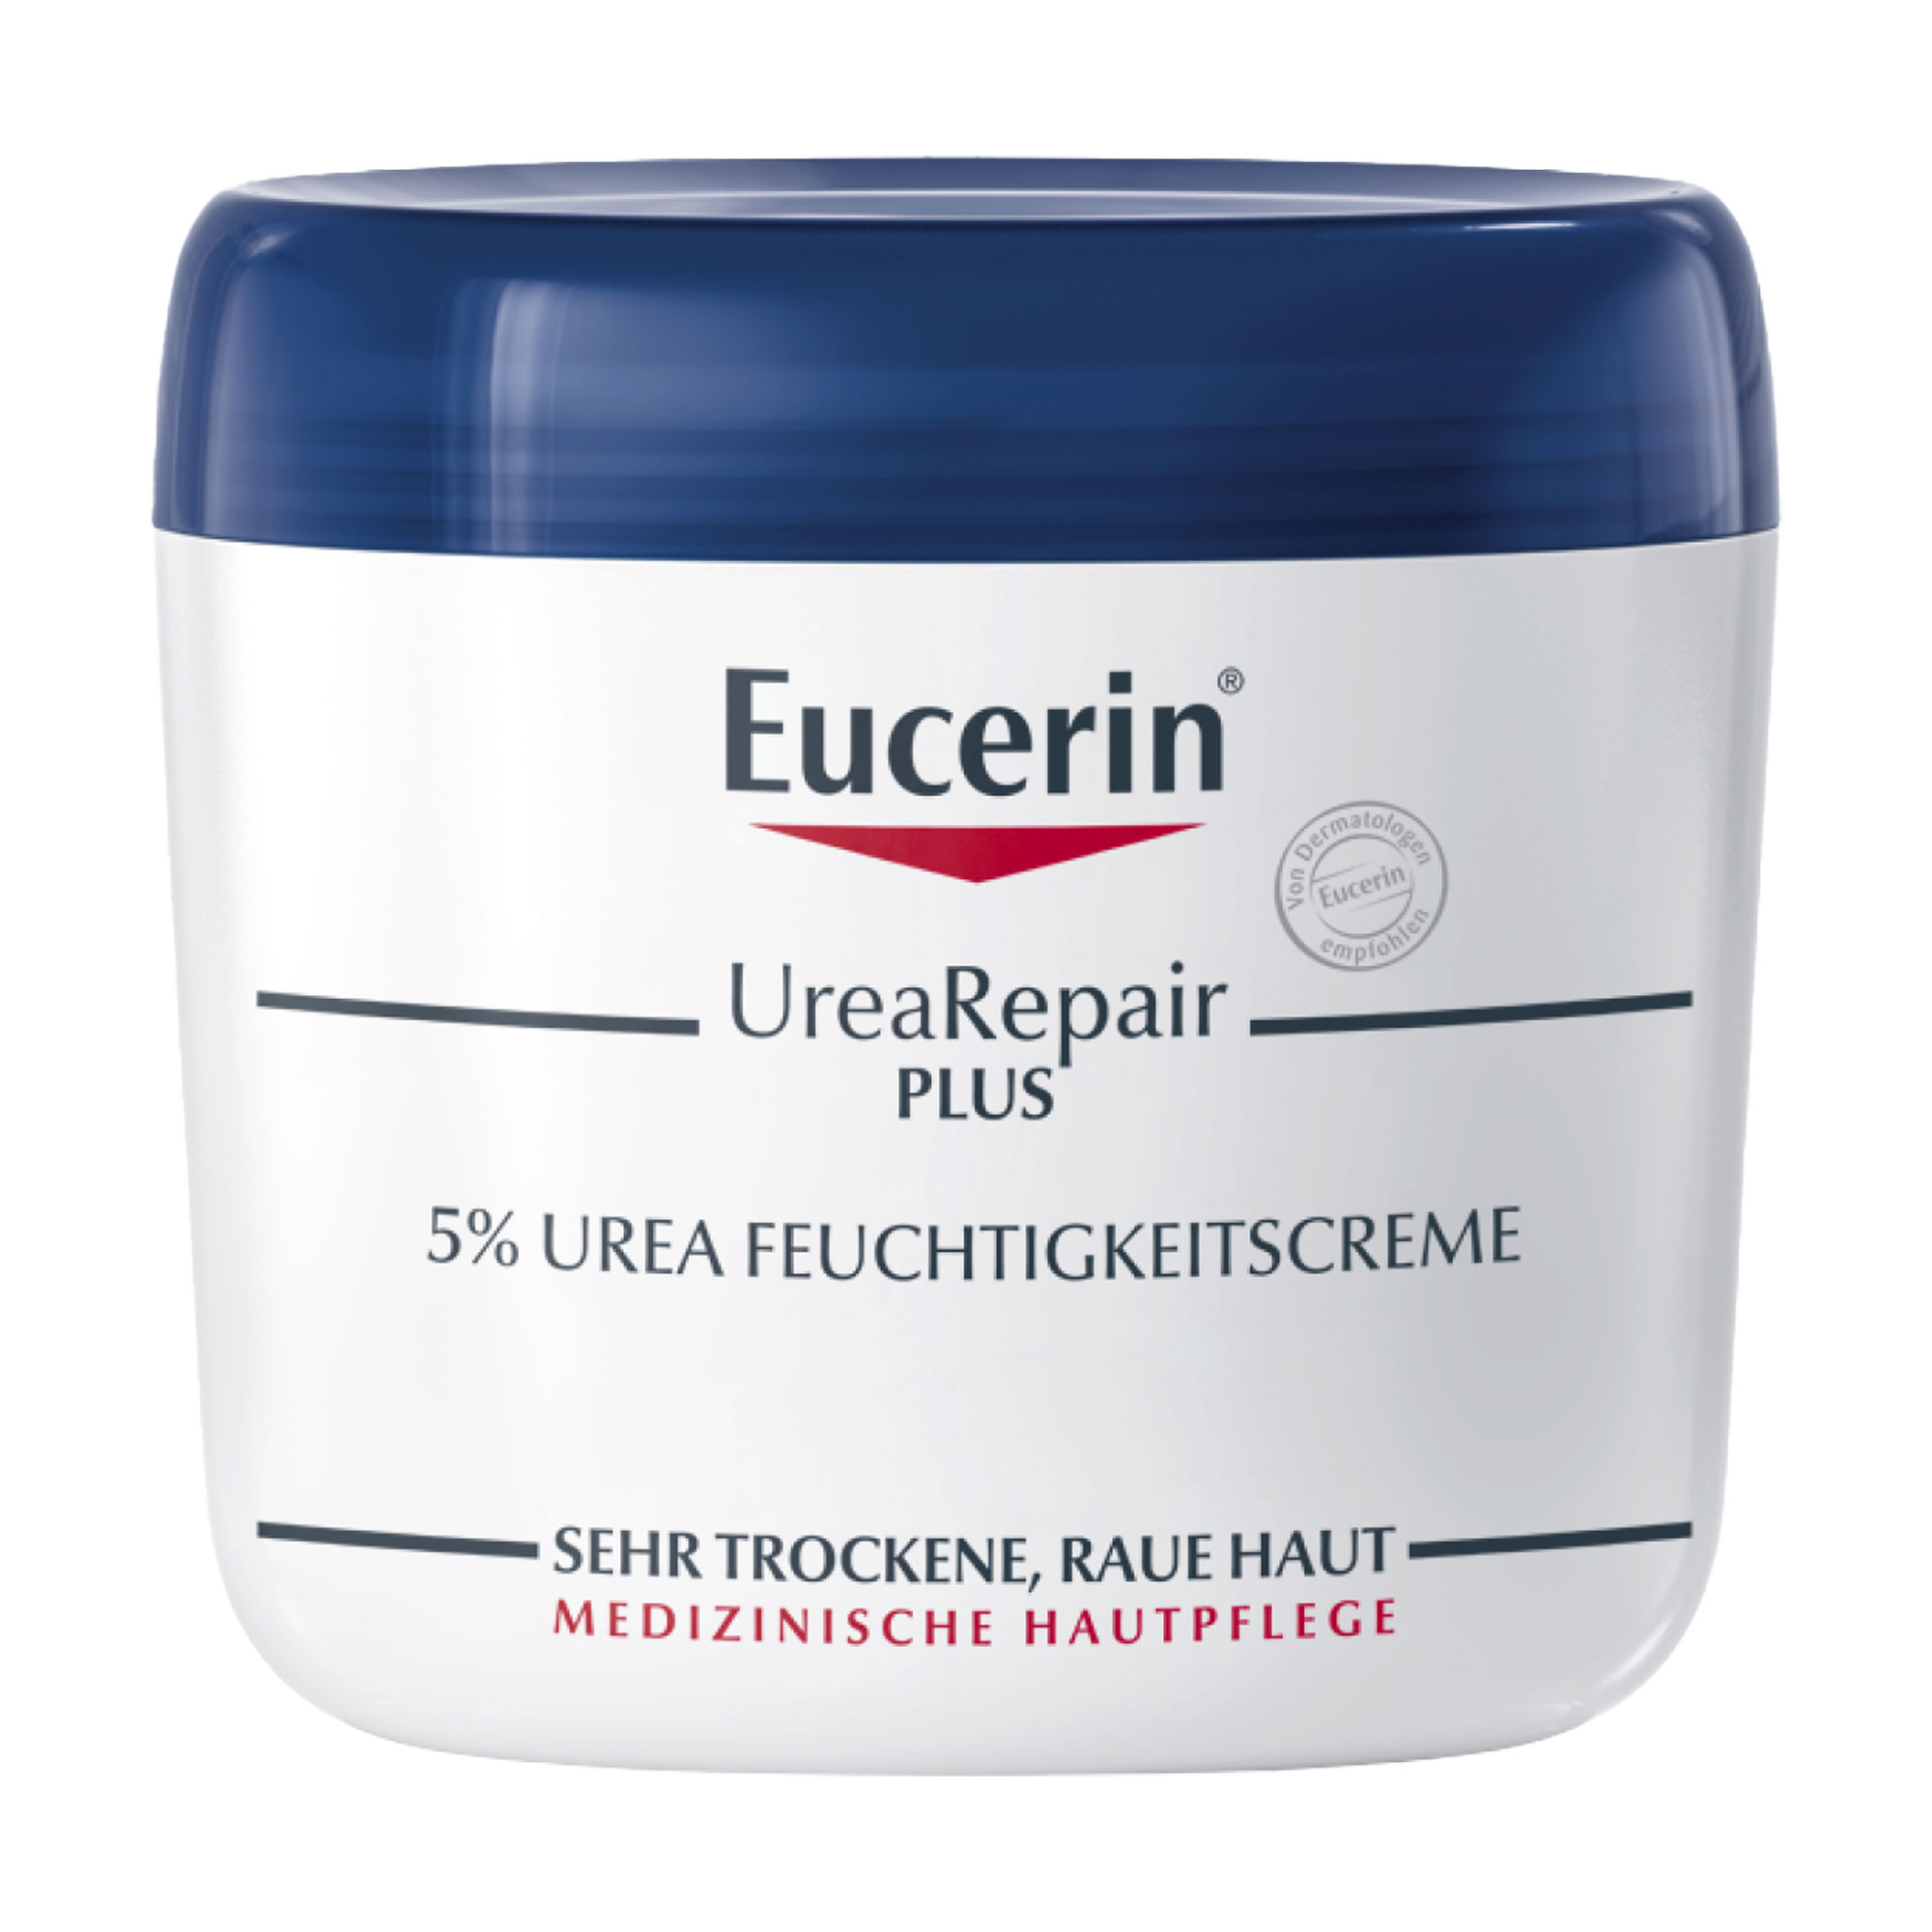 Urea Creme mit Repair-PLUS-Komplex für intensive Feuchtigkeitspflege von trockener bis sehr trockener Haut.